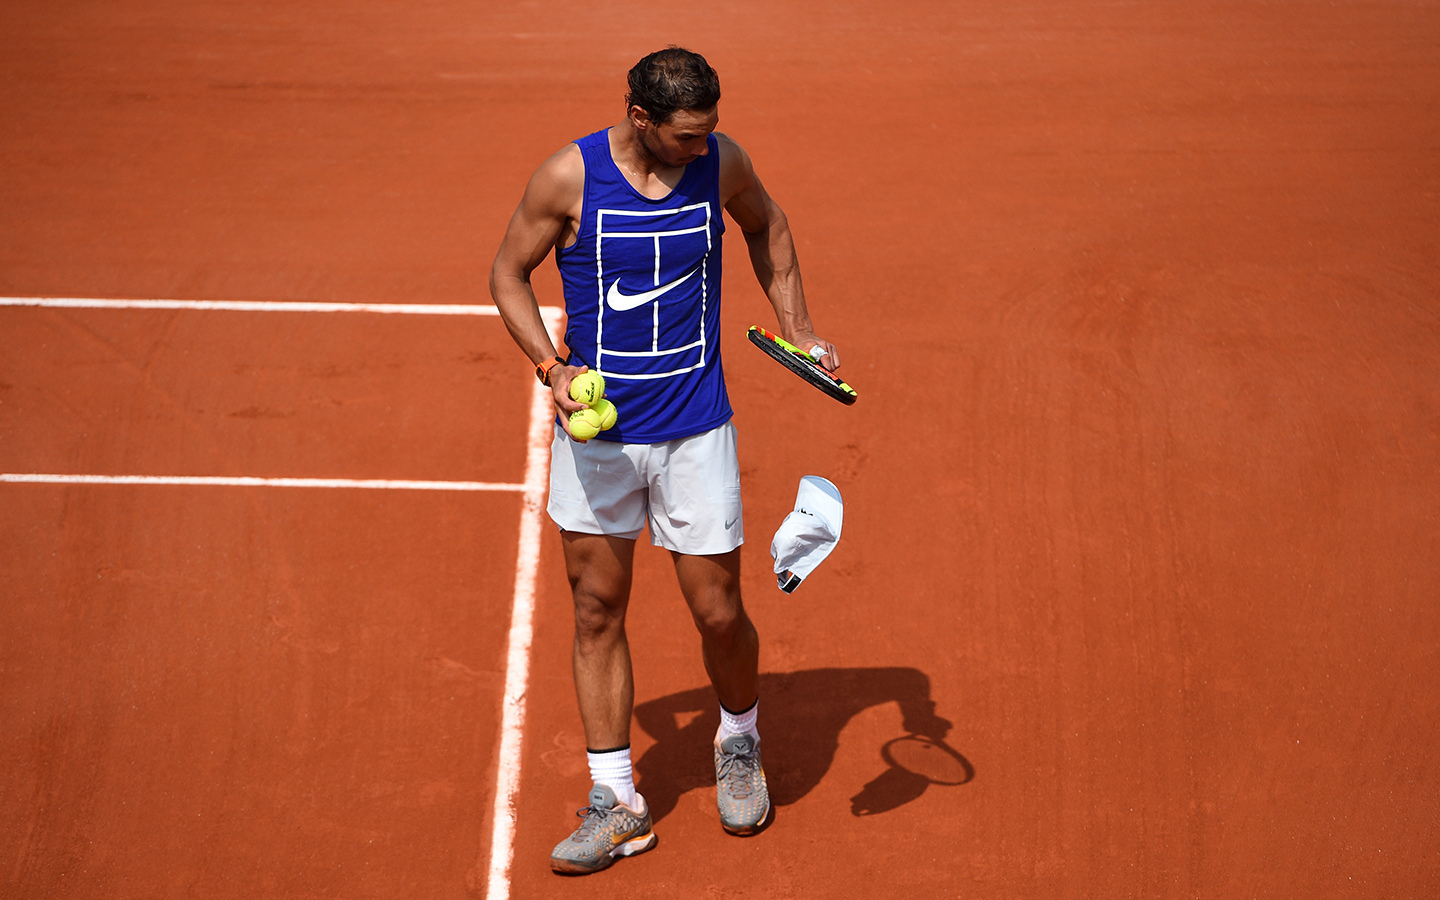 Nadal returns to Roland-Garros - Roland-Garros - The 2020 Roland-Garros Tournament ...1440 x 900